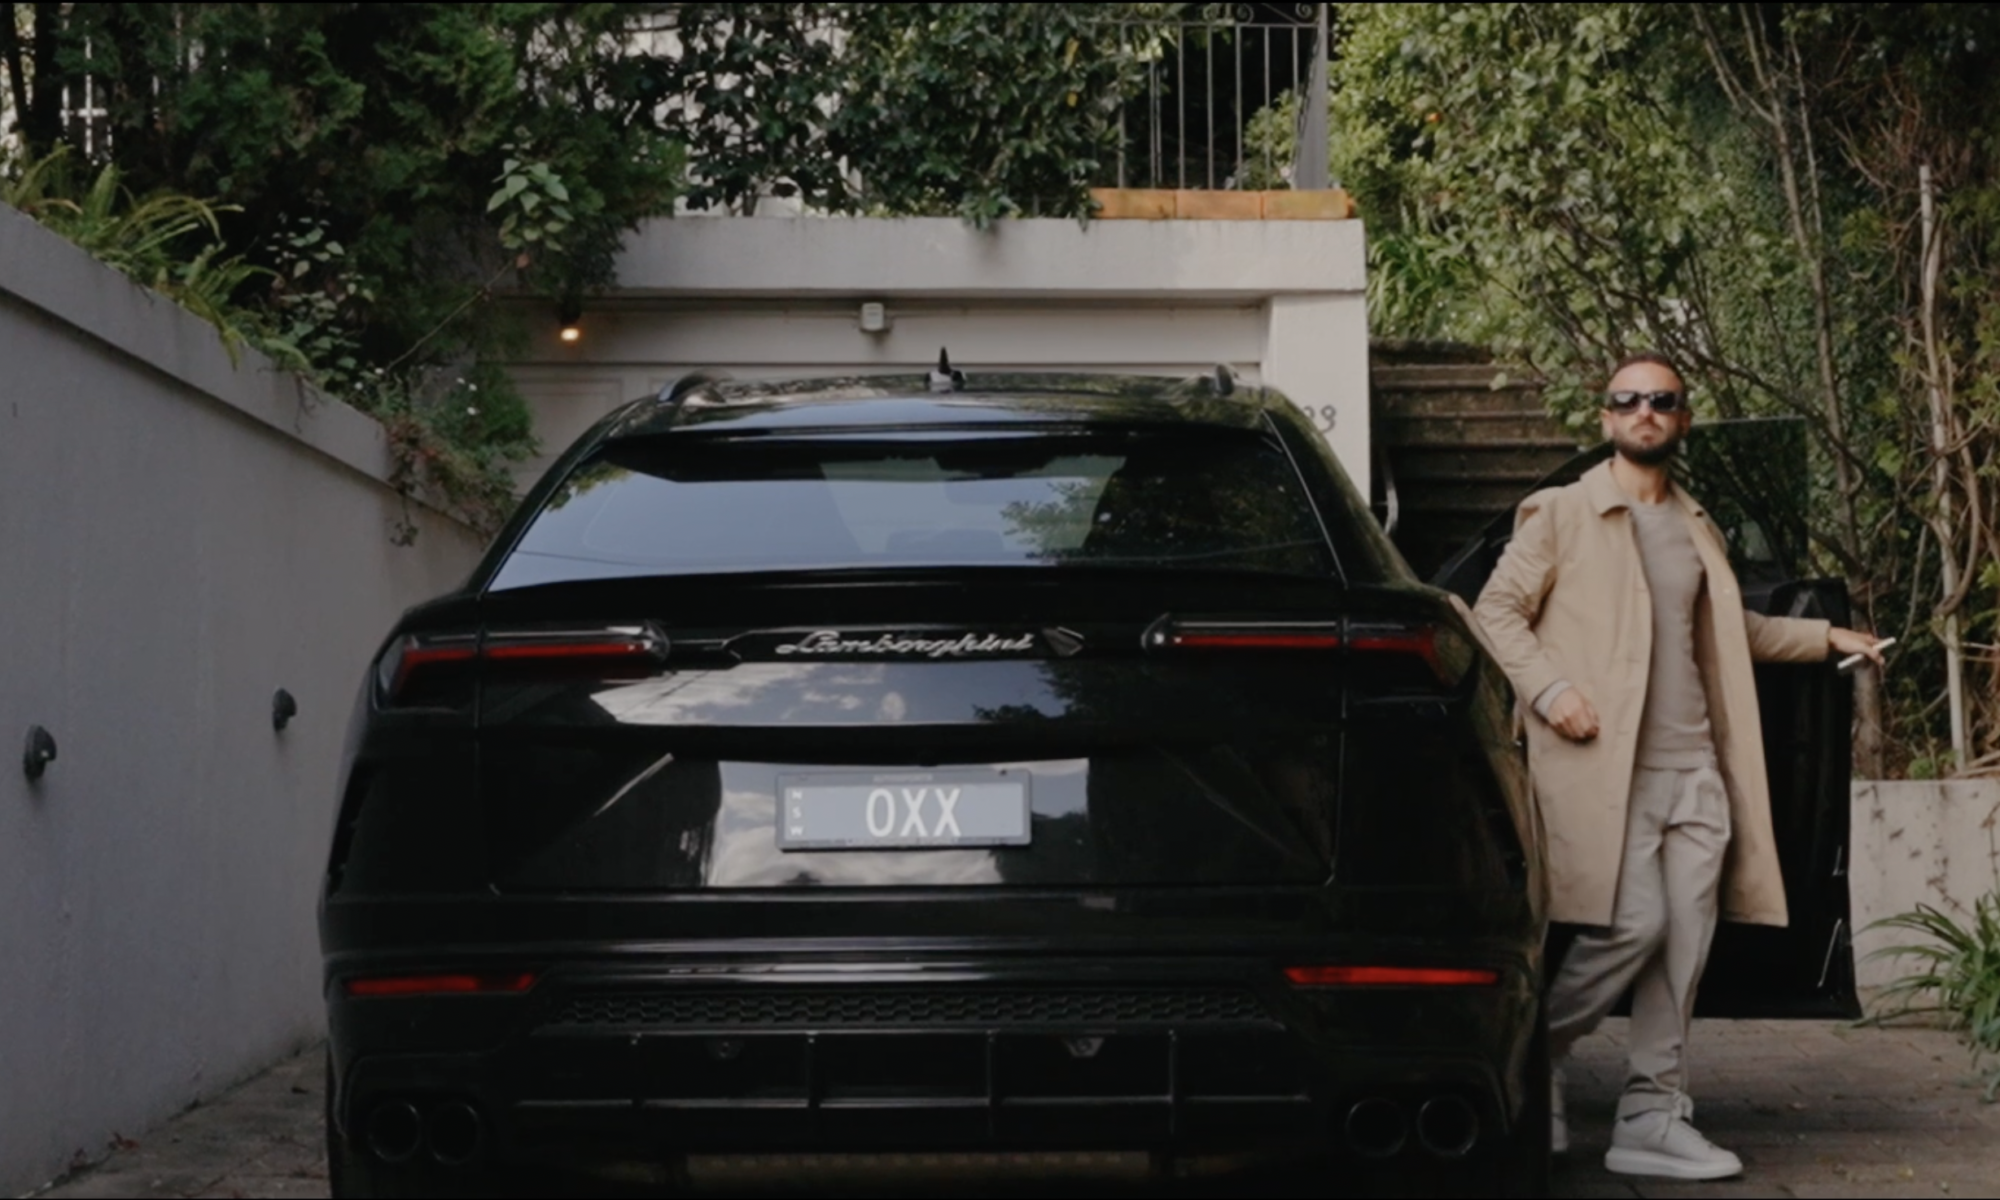 Lamborghini Urus 4wd in vaucluse mansion